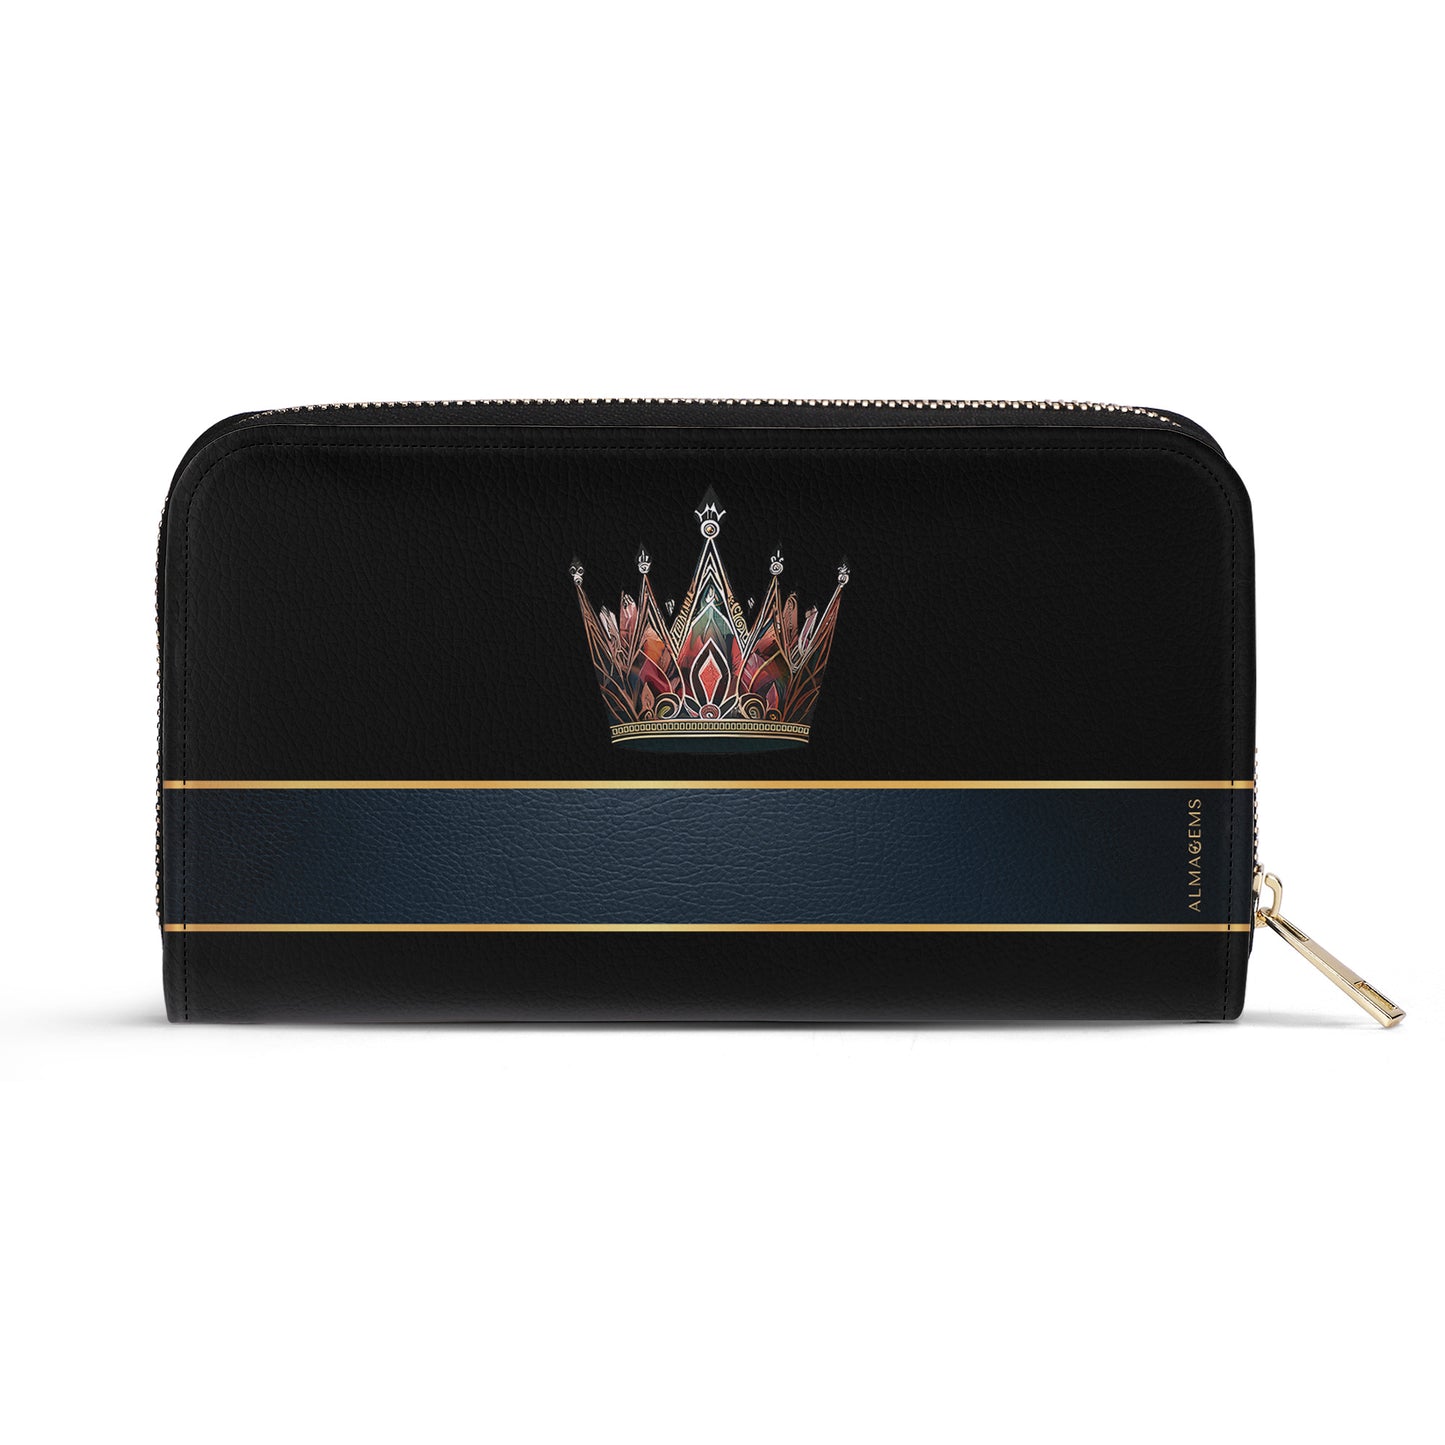 Queen Black - New - Leather Wallet - queen02blackWL